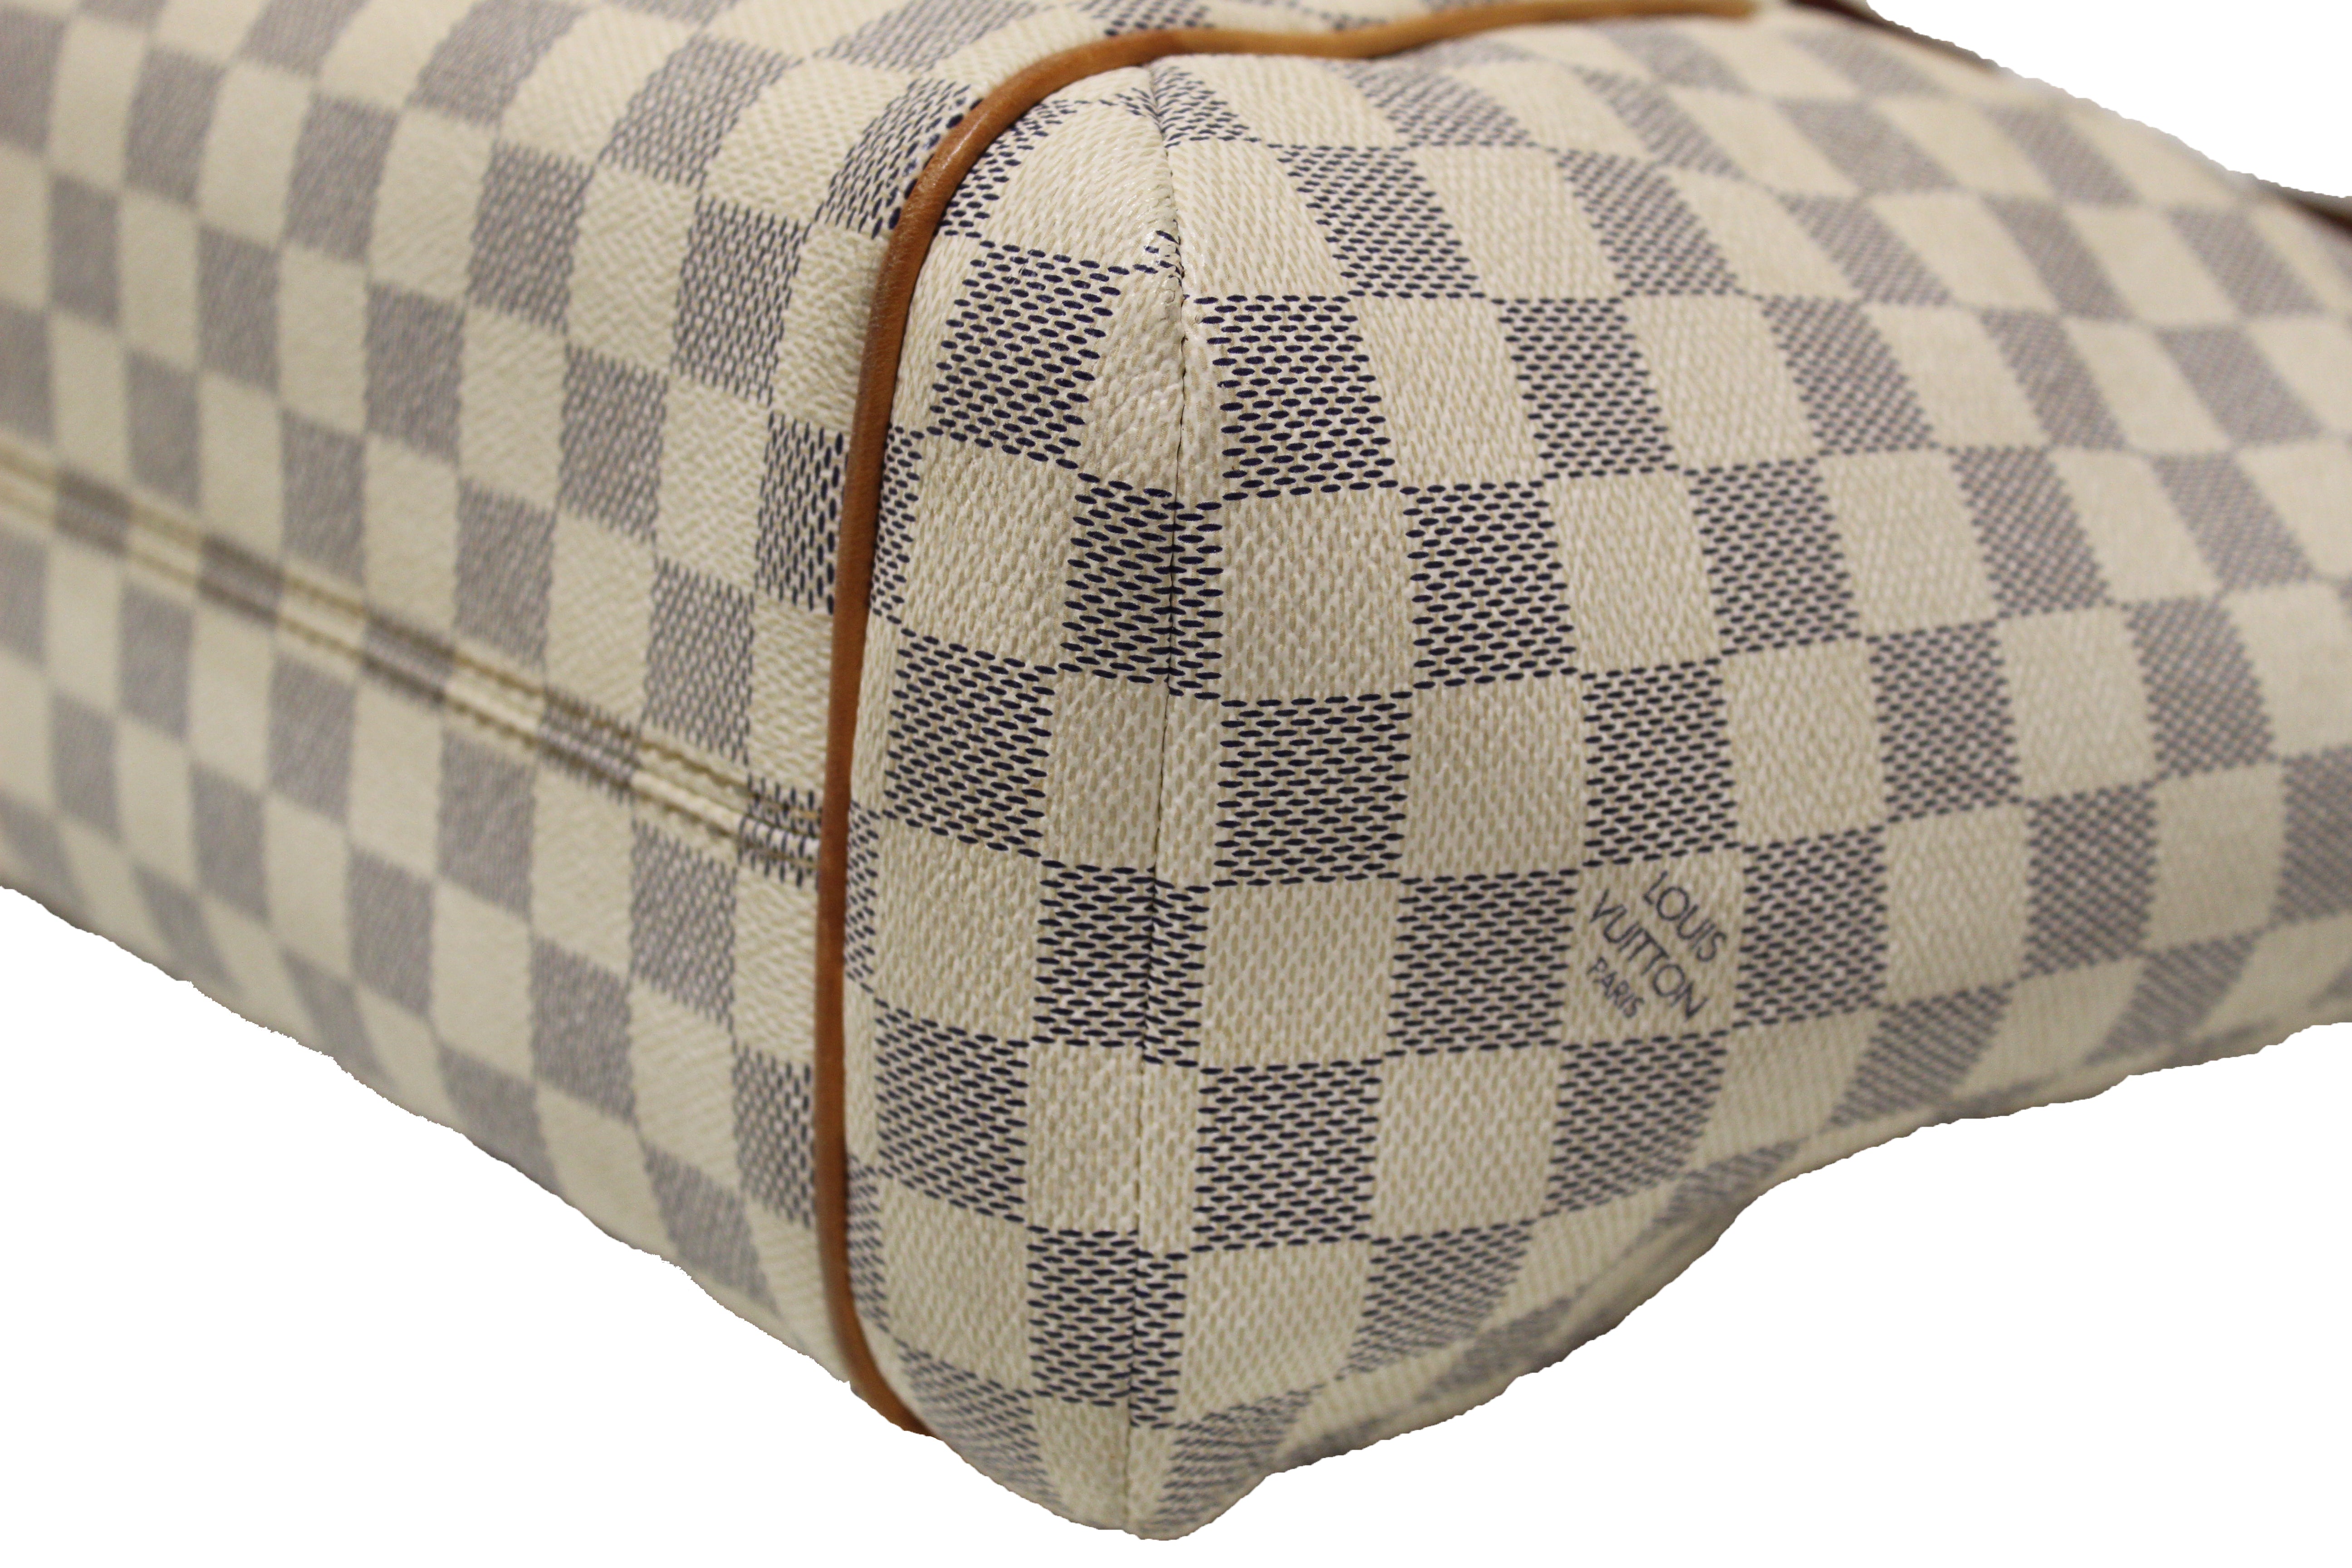 Authentic Louis Vuitton Damier Azur Totally PM Shoulder Tote Bag